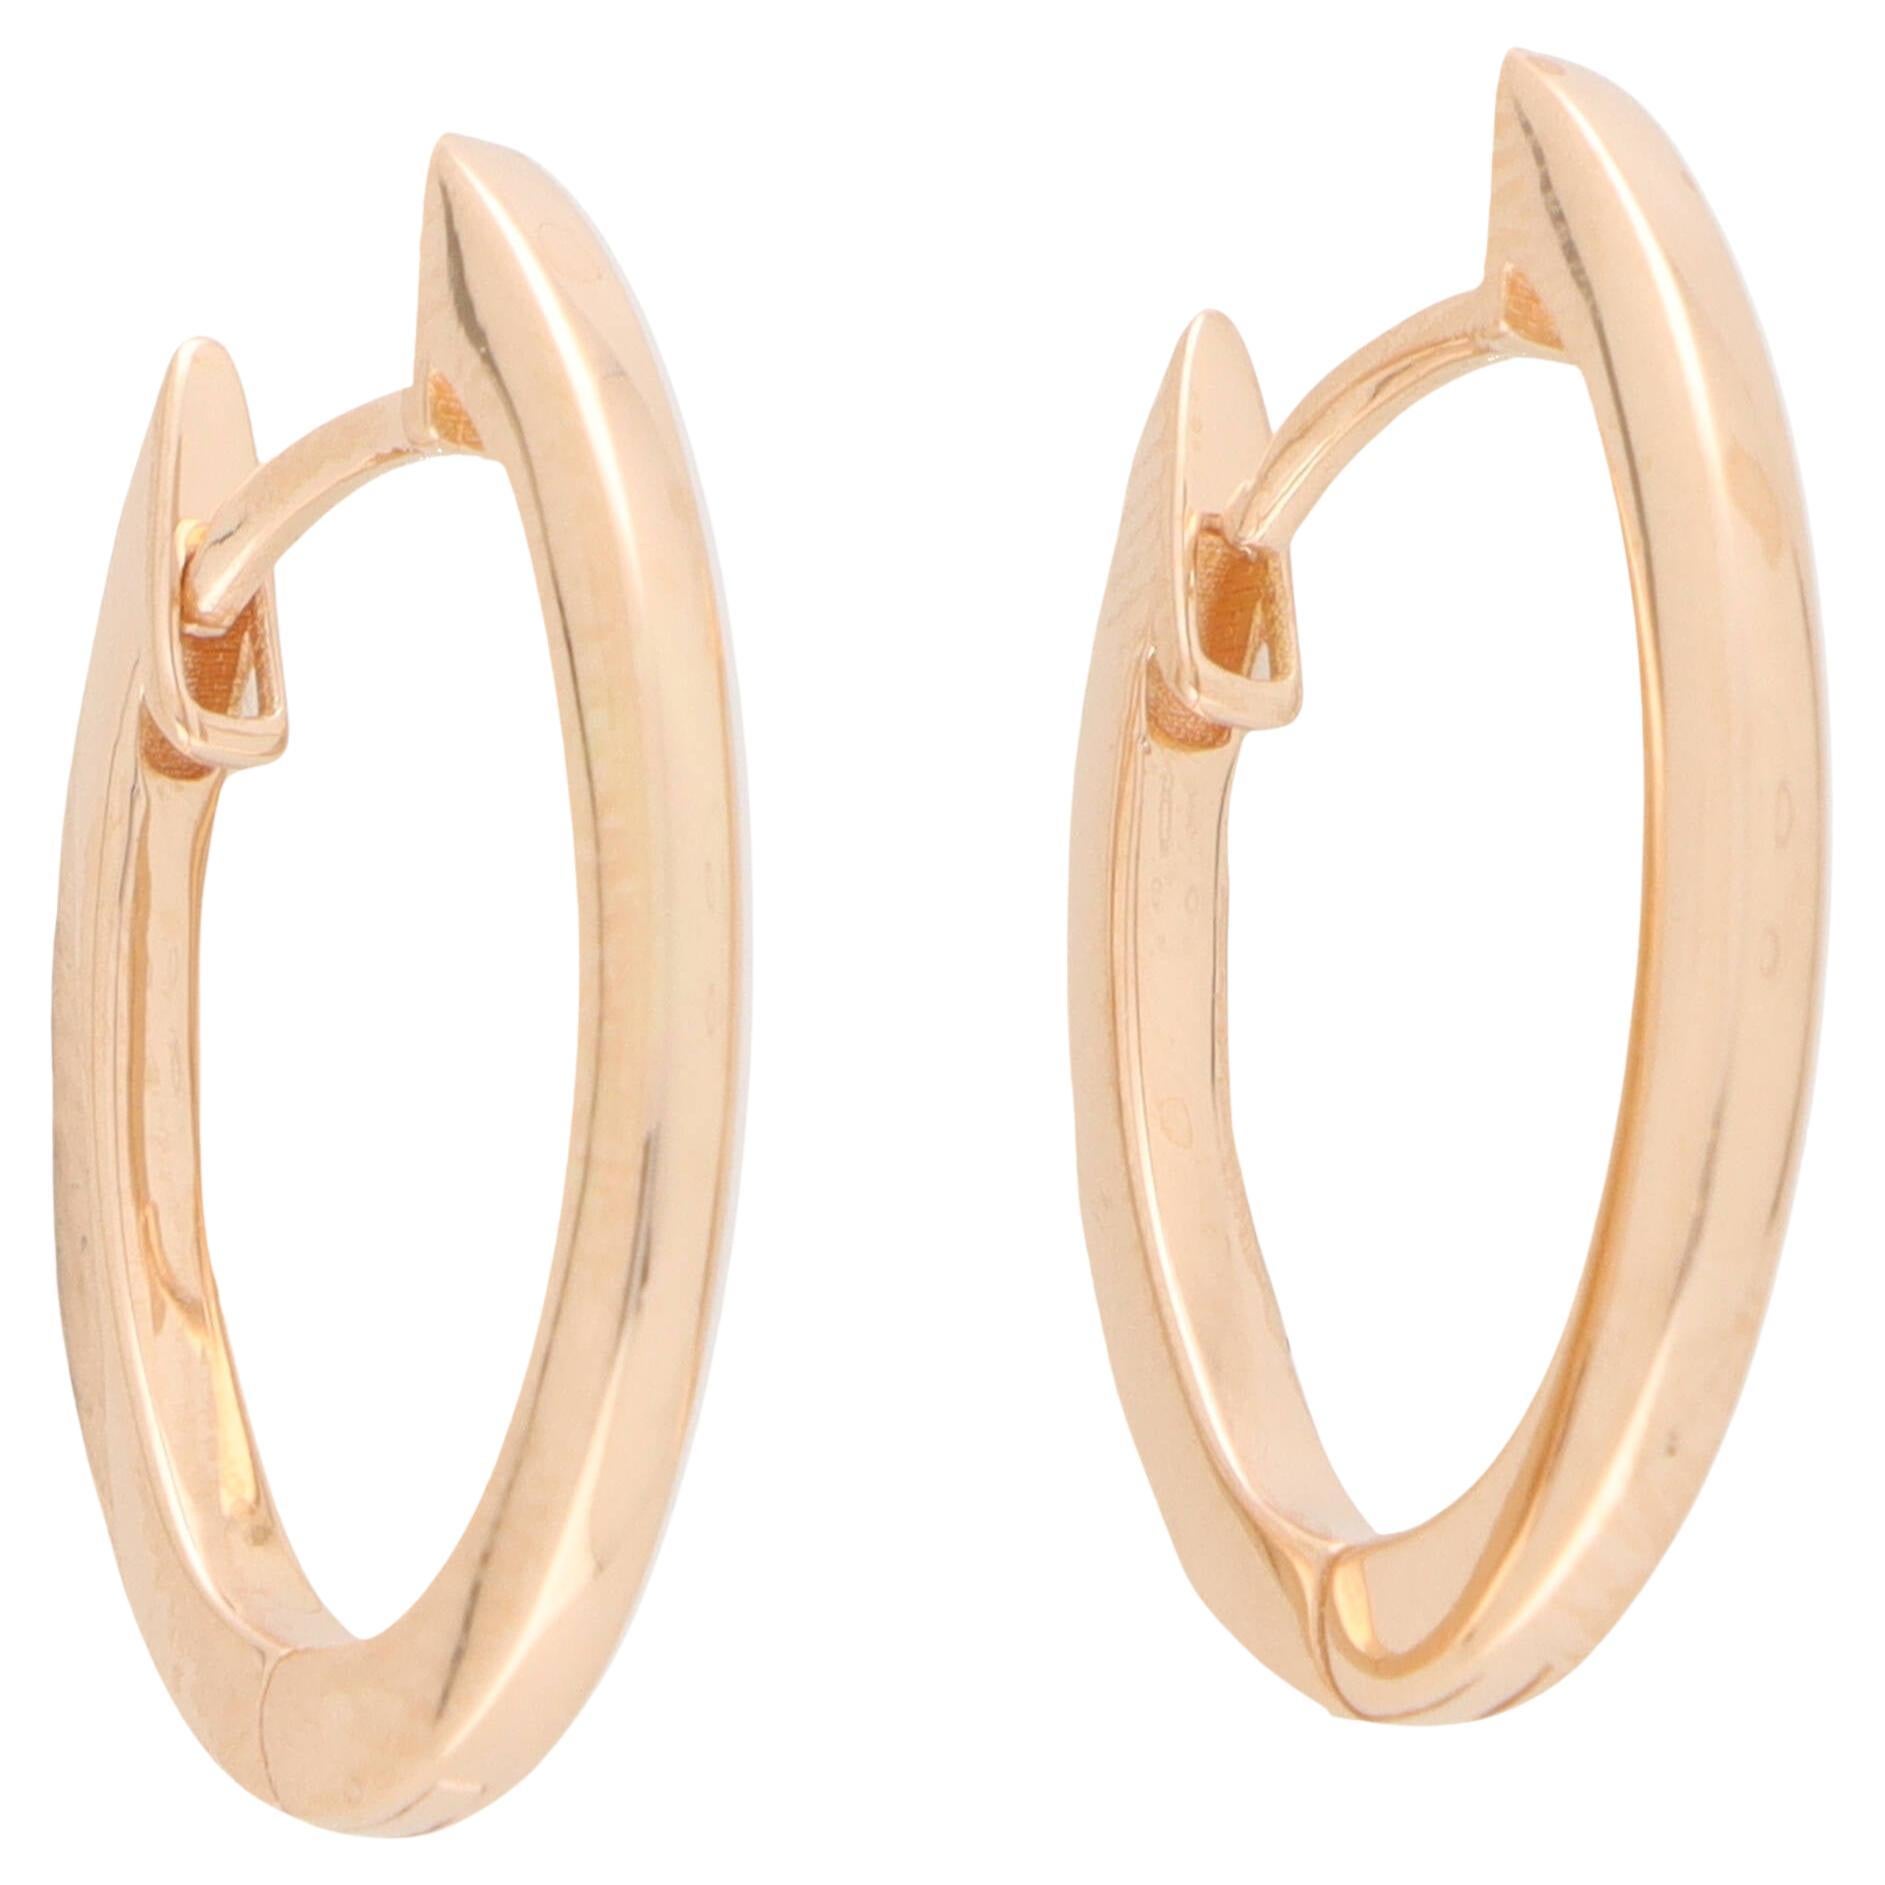 Oval Hoop Earrings in Solid 18k Rose Gold